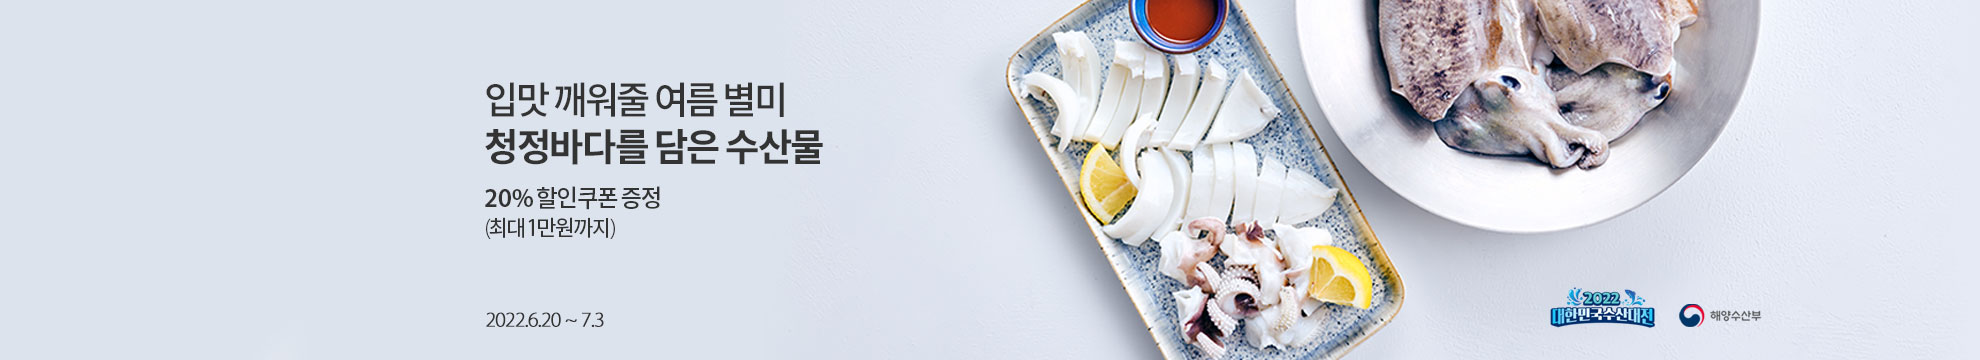 입맛 꺠워줄 여름 별미 청정바다를 담은 수산물 / 20% 할인쿠폰 증정 (최대 1만원 까지) / 2022,6.20 ~ 7.3